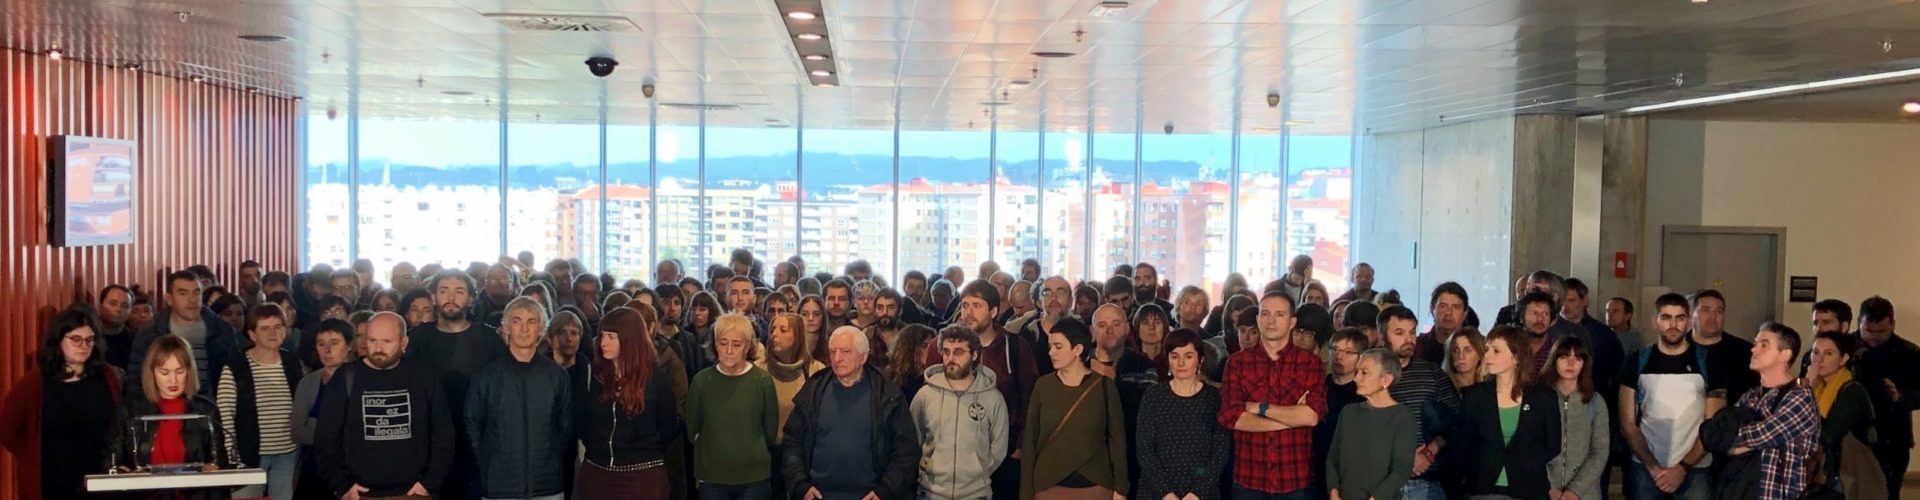 Representantes de los agentes sindicales y sociales que conformamos la Carta de Derechos Sociales de Euskal Herria, en la comparecencia realizada en diciembre en el BEC de Barakaldo.